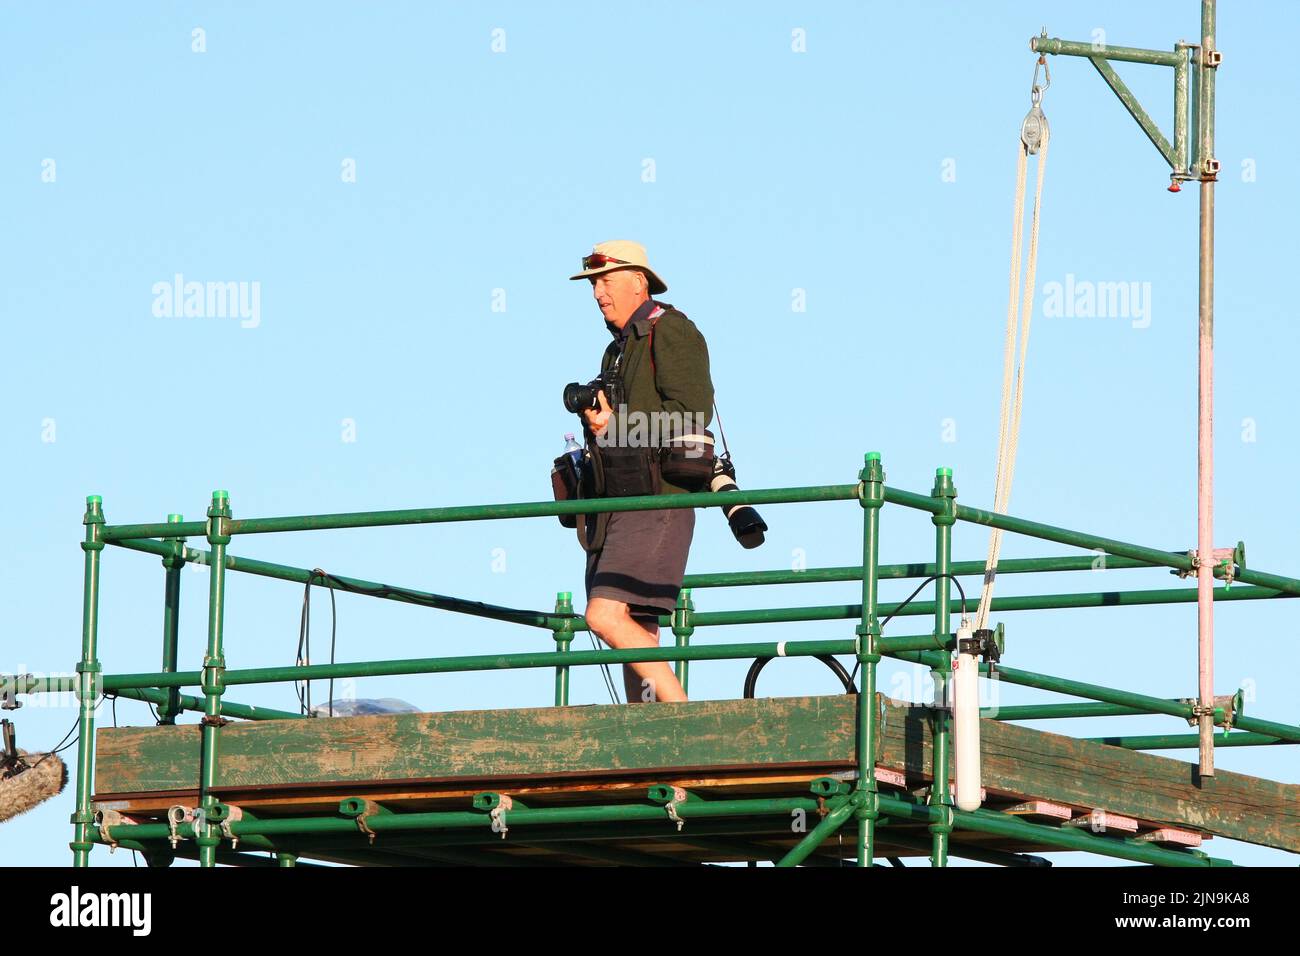 El legendario fotógrafo de golf David Cannon en la parte superior de la torre de TV junto al green de 16th hoyos durante la segunda ronda del Abierto Británico de Mujeres Ricoh 2013 celebrado en Foto de stock